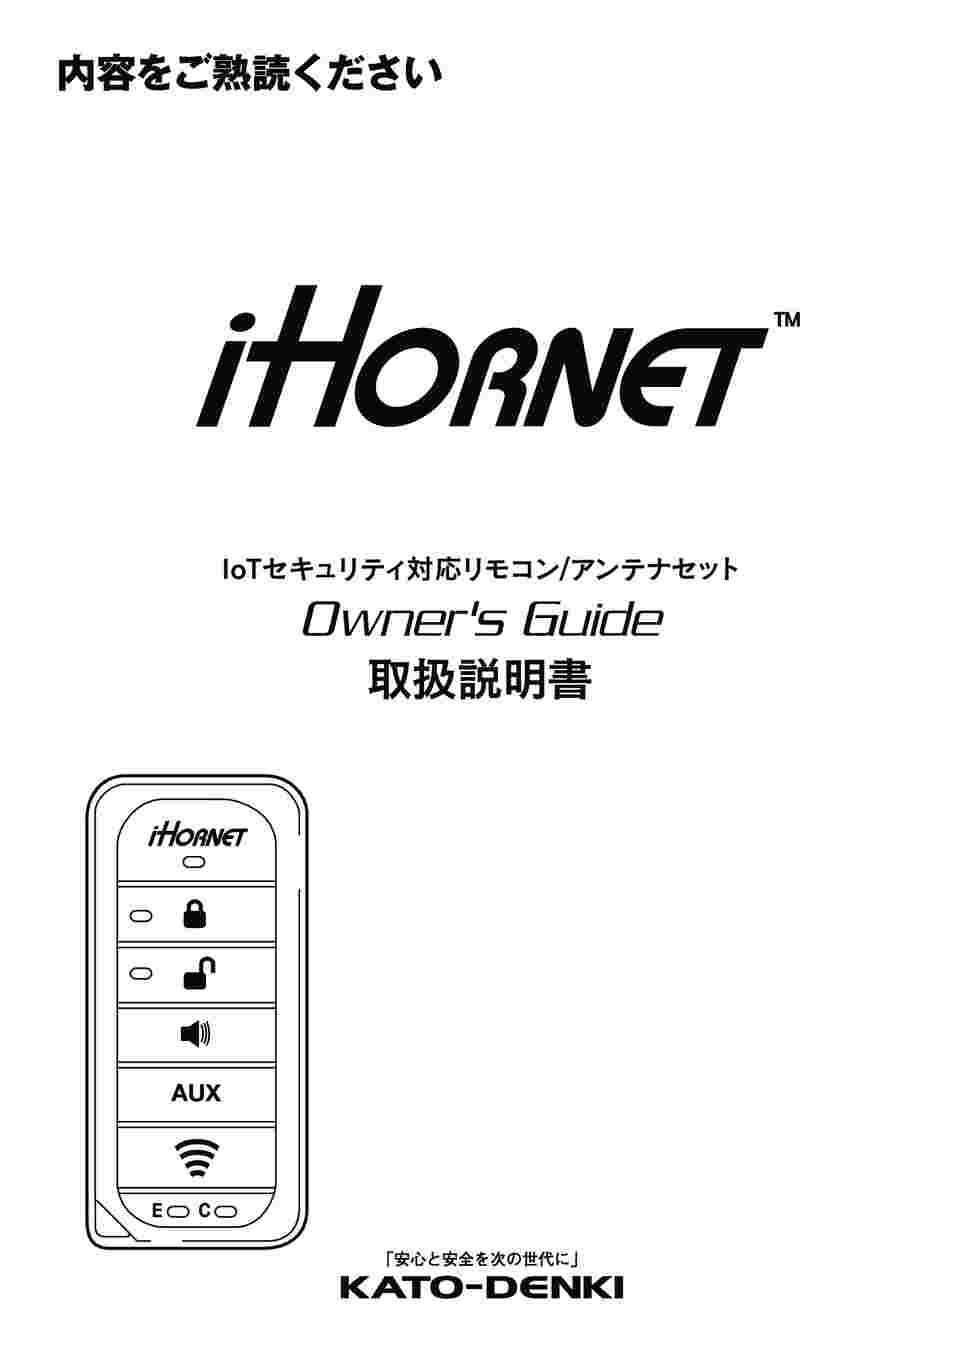 64-9313-07 HORNETオプション LEDアンサーバックリモコン iH3 【AXEL 